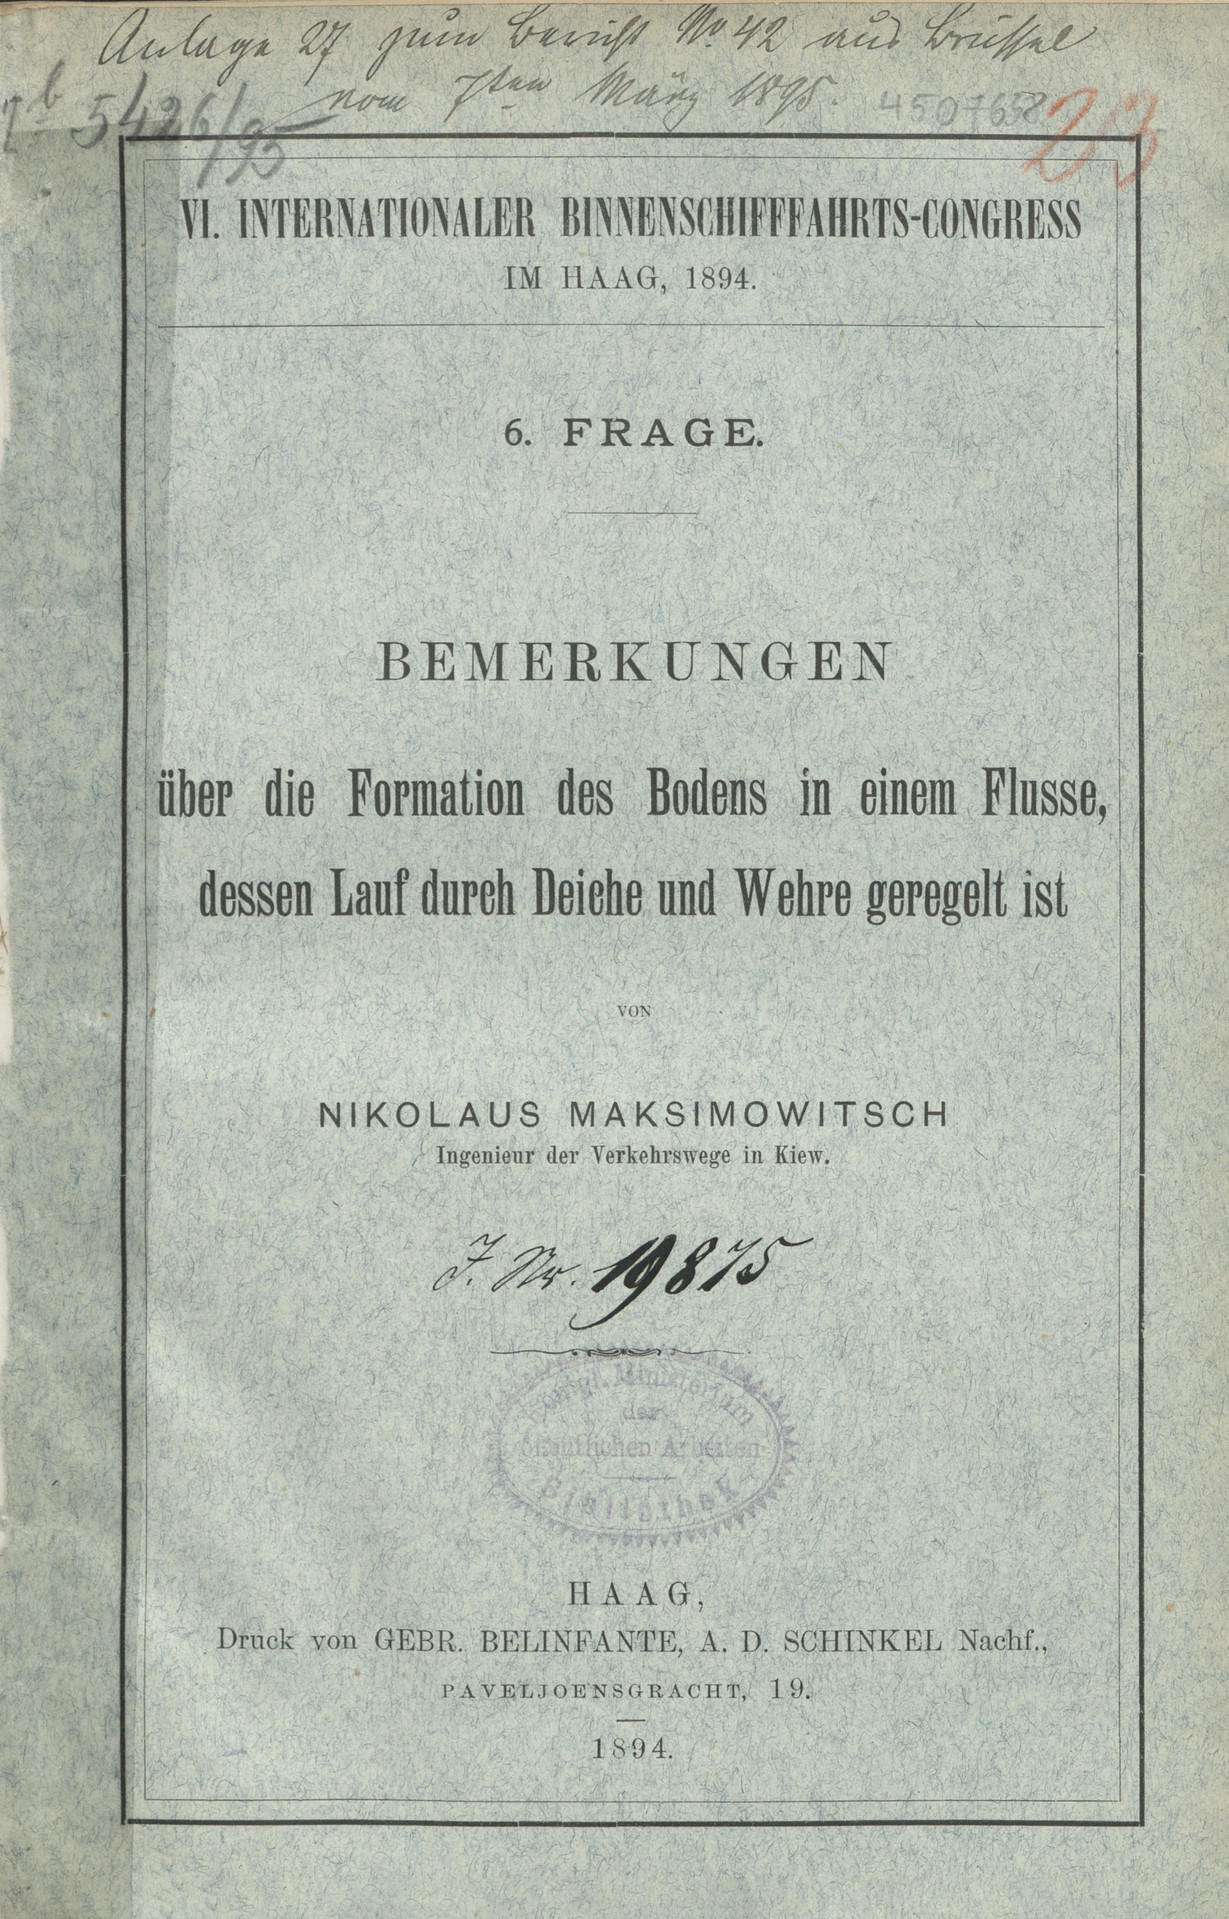 VI. Internationaler Binnenschifffahrts-Conress, Haag, 1894. Frage 6, Bemerkungen über die Formation des Bodens in einem Flusse, dessen Lauf durch Deiche und Wehre geregelt ist